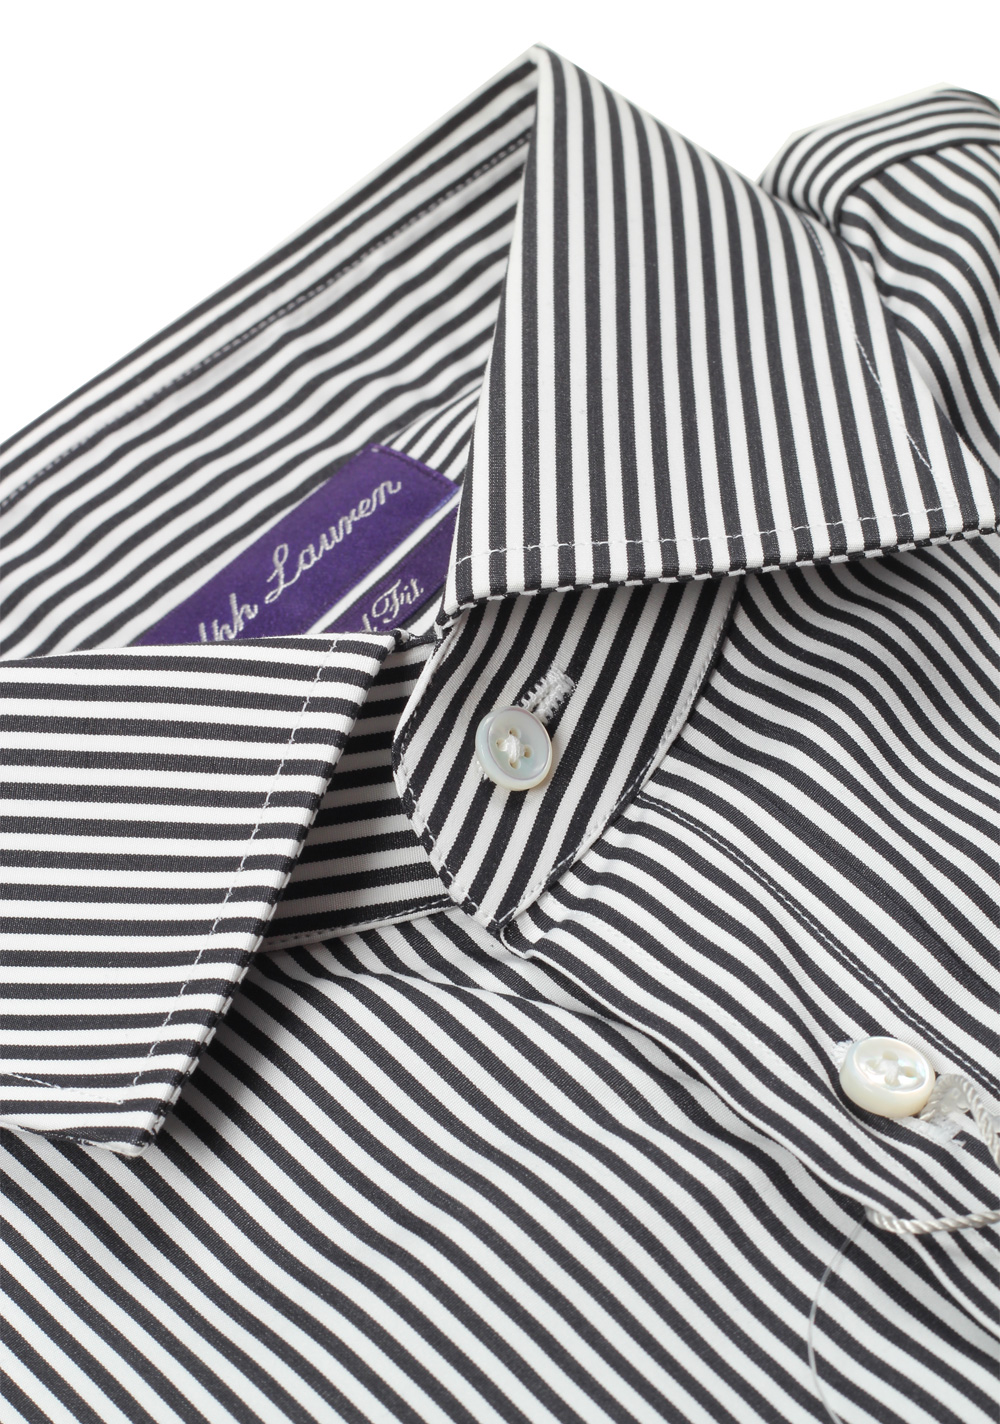 Ralph Lauren Purple Label Tailored Fit Blue Striped Shirt Size 42 / 16.5 U.S. | Costume Limité